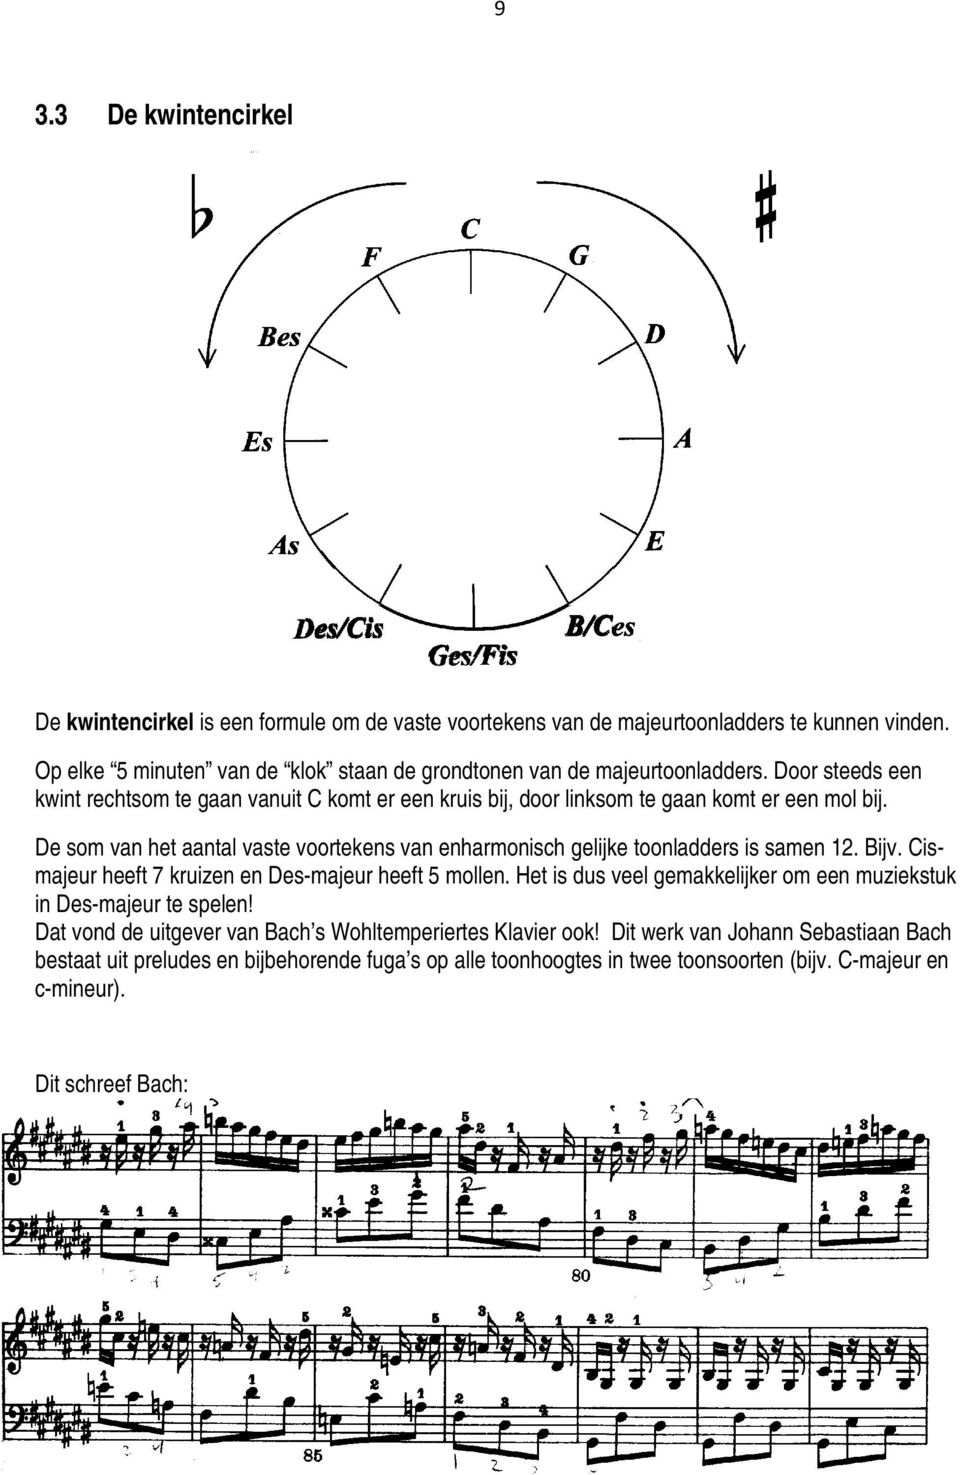 De som van het aantal vaste voortekens van enharmonisch gelijke toonladders is samen 12. Bijv. Cismajeur heeft 7 kruizen en Des-majeur heeft 5 mollen.